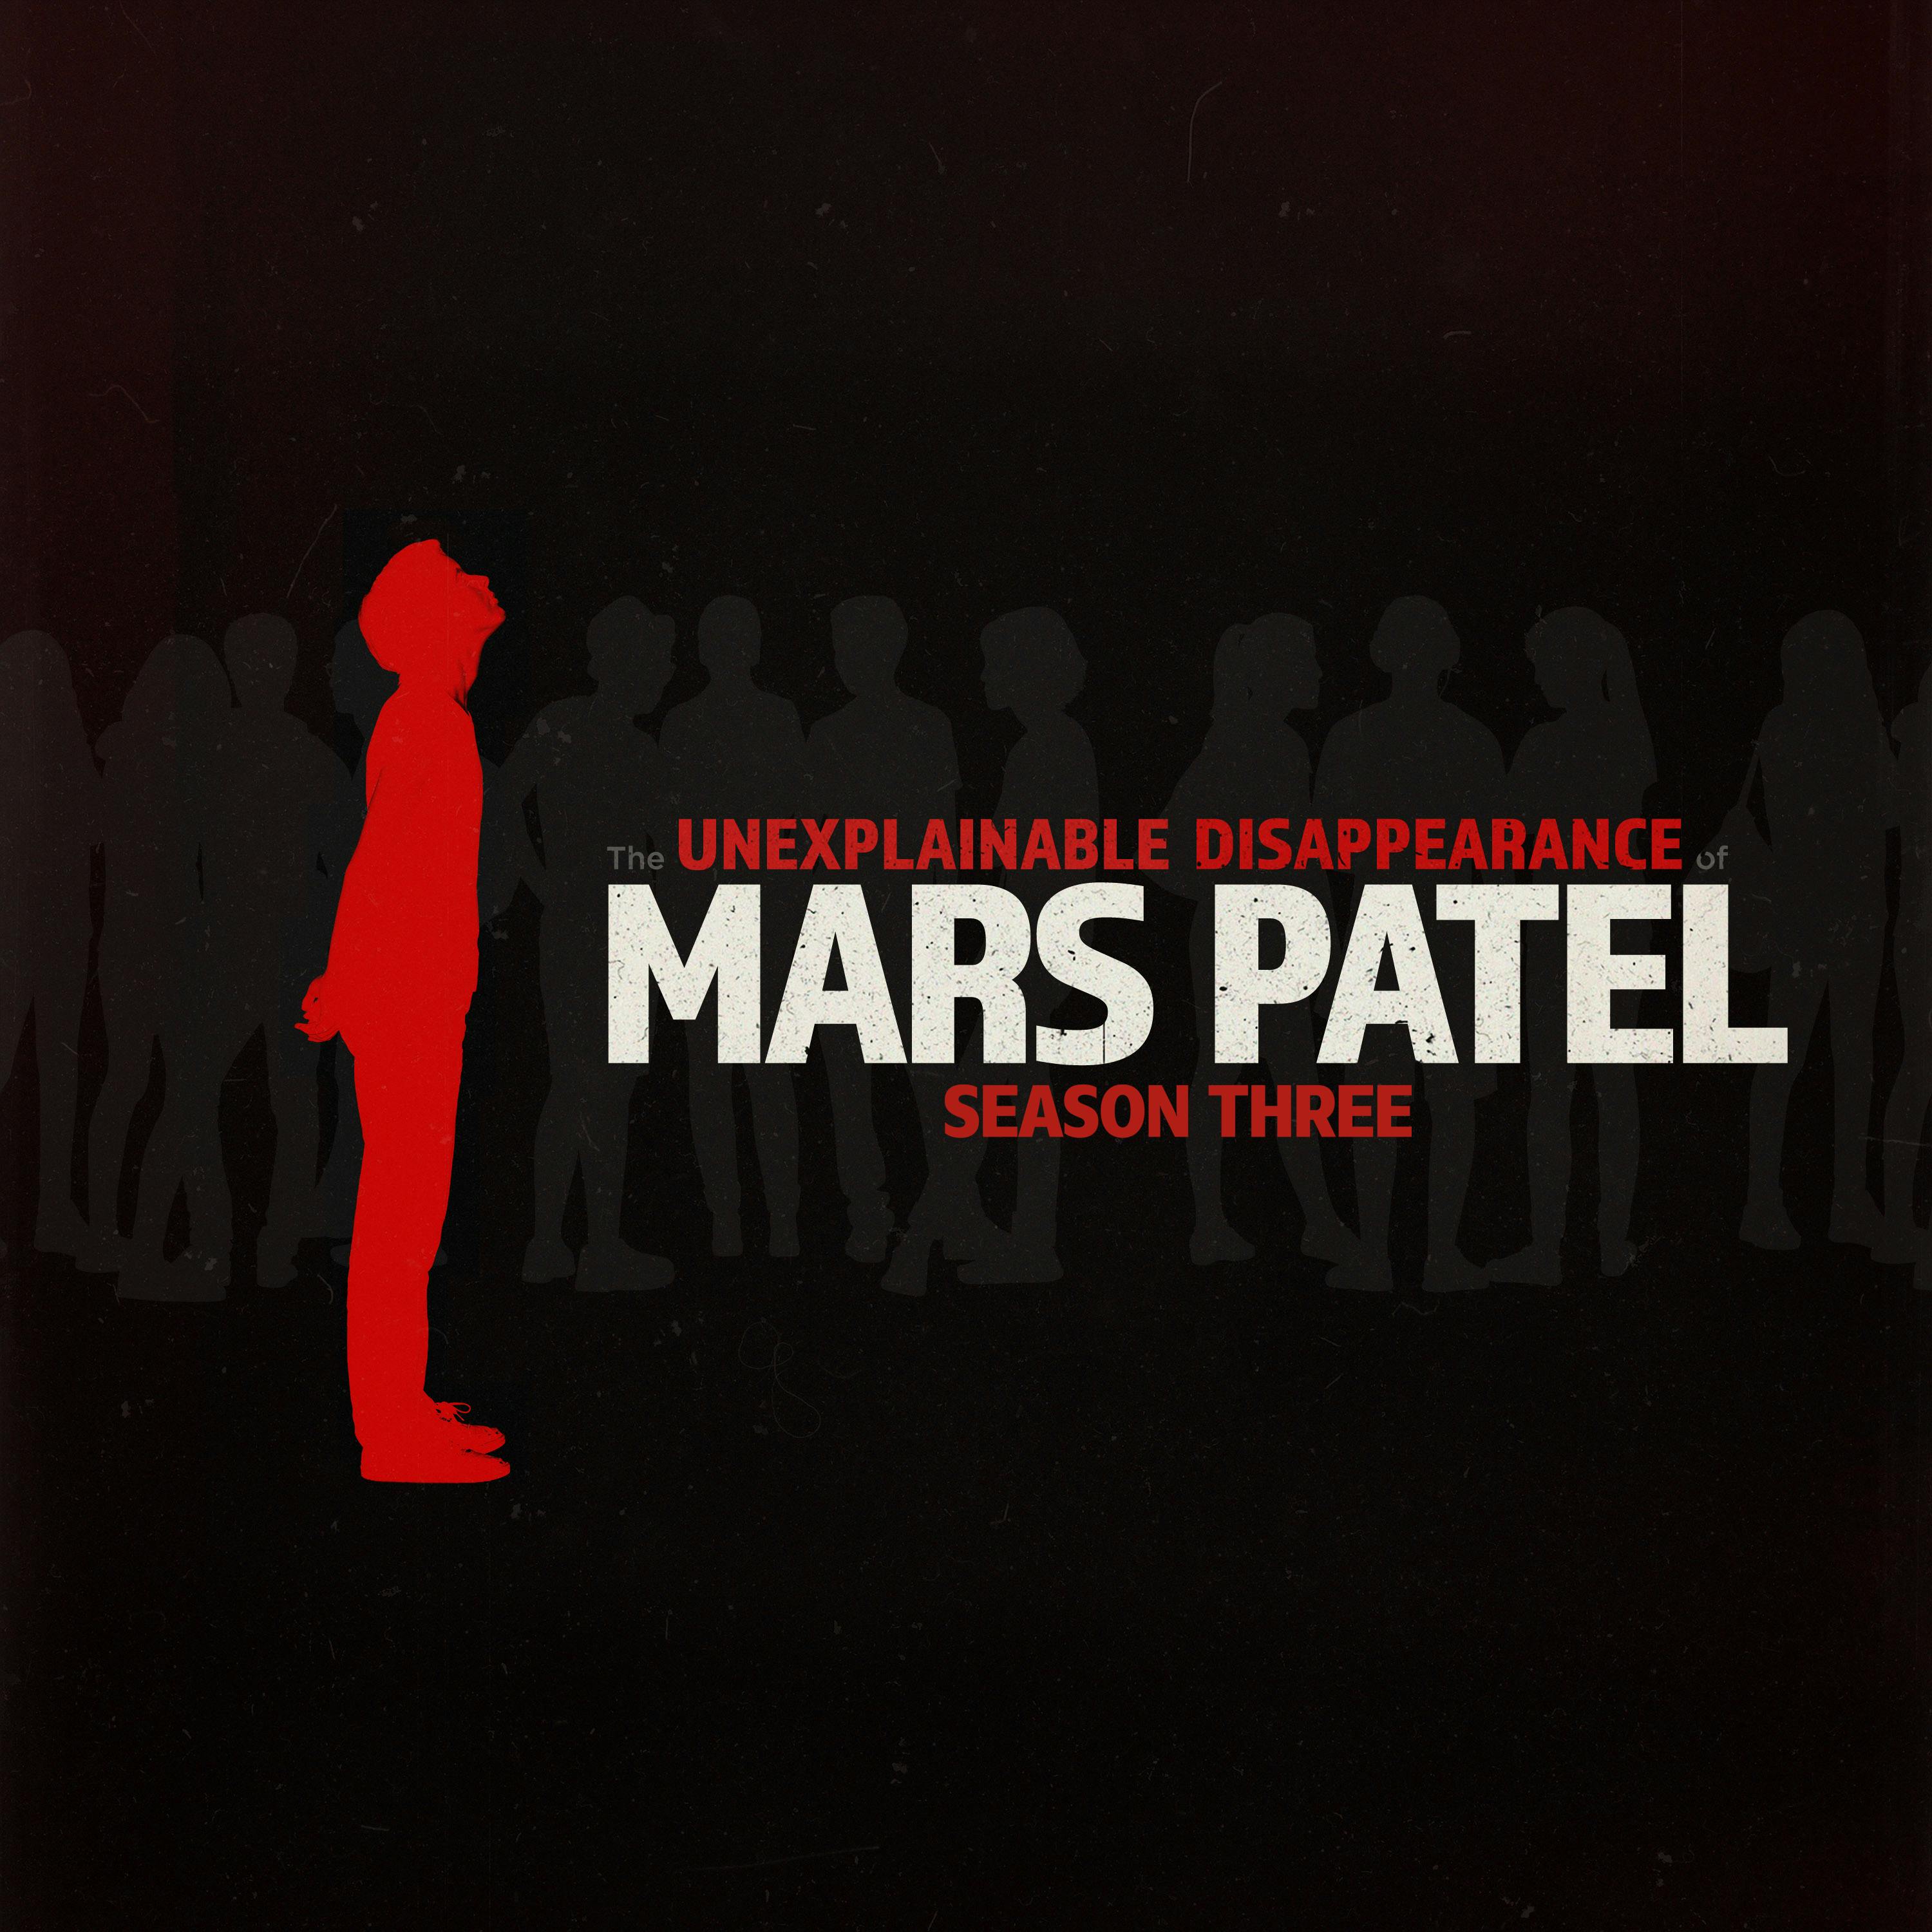 S3 E1: The Unexplainable Reappearance of Mars Patel